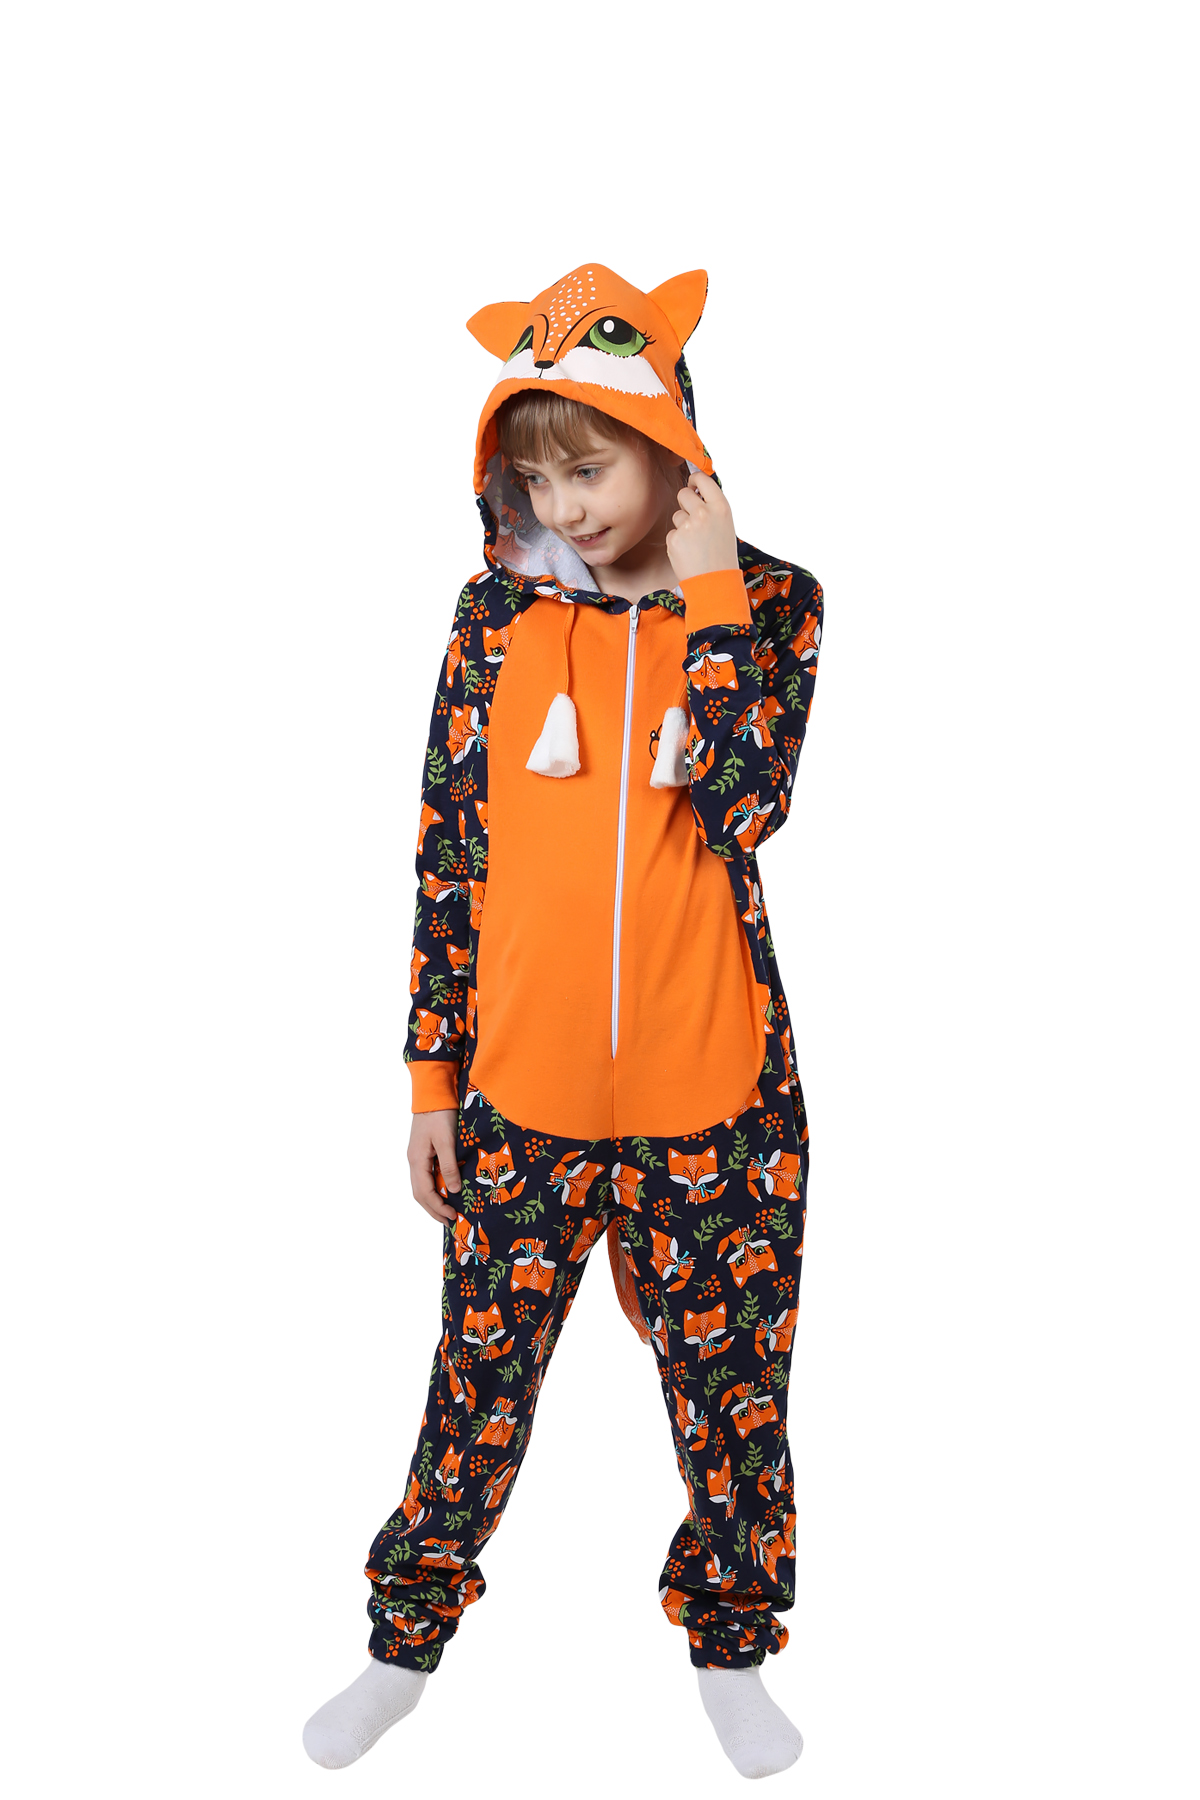 Детская пижама-кигуруми Лиса Цвет: Оранжевый (10 лет), размер 10 лет otj636469 Детская пижама-кигуруми Лиса Цвет: Оранжевый (10 лет) - фото 1